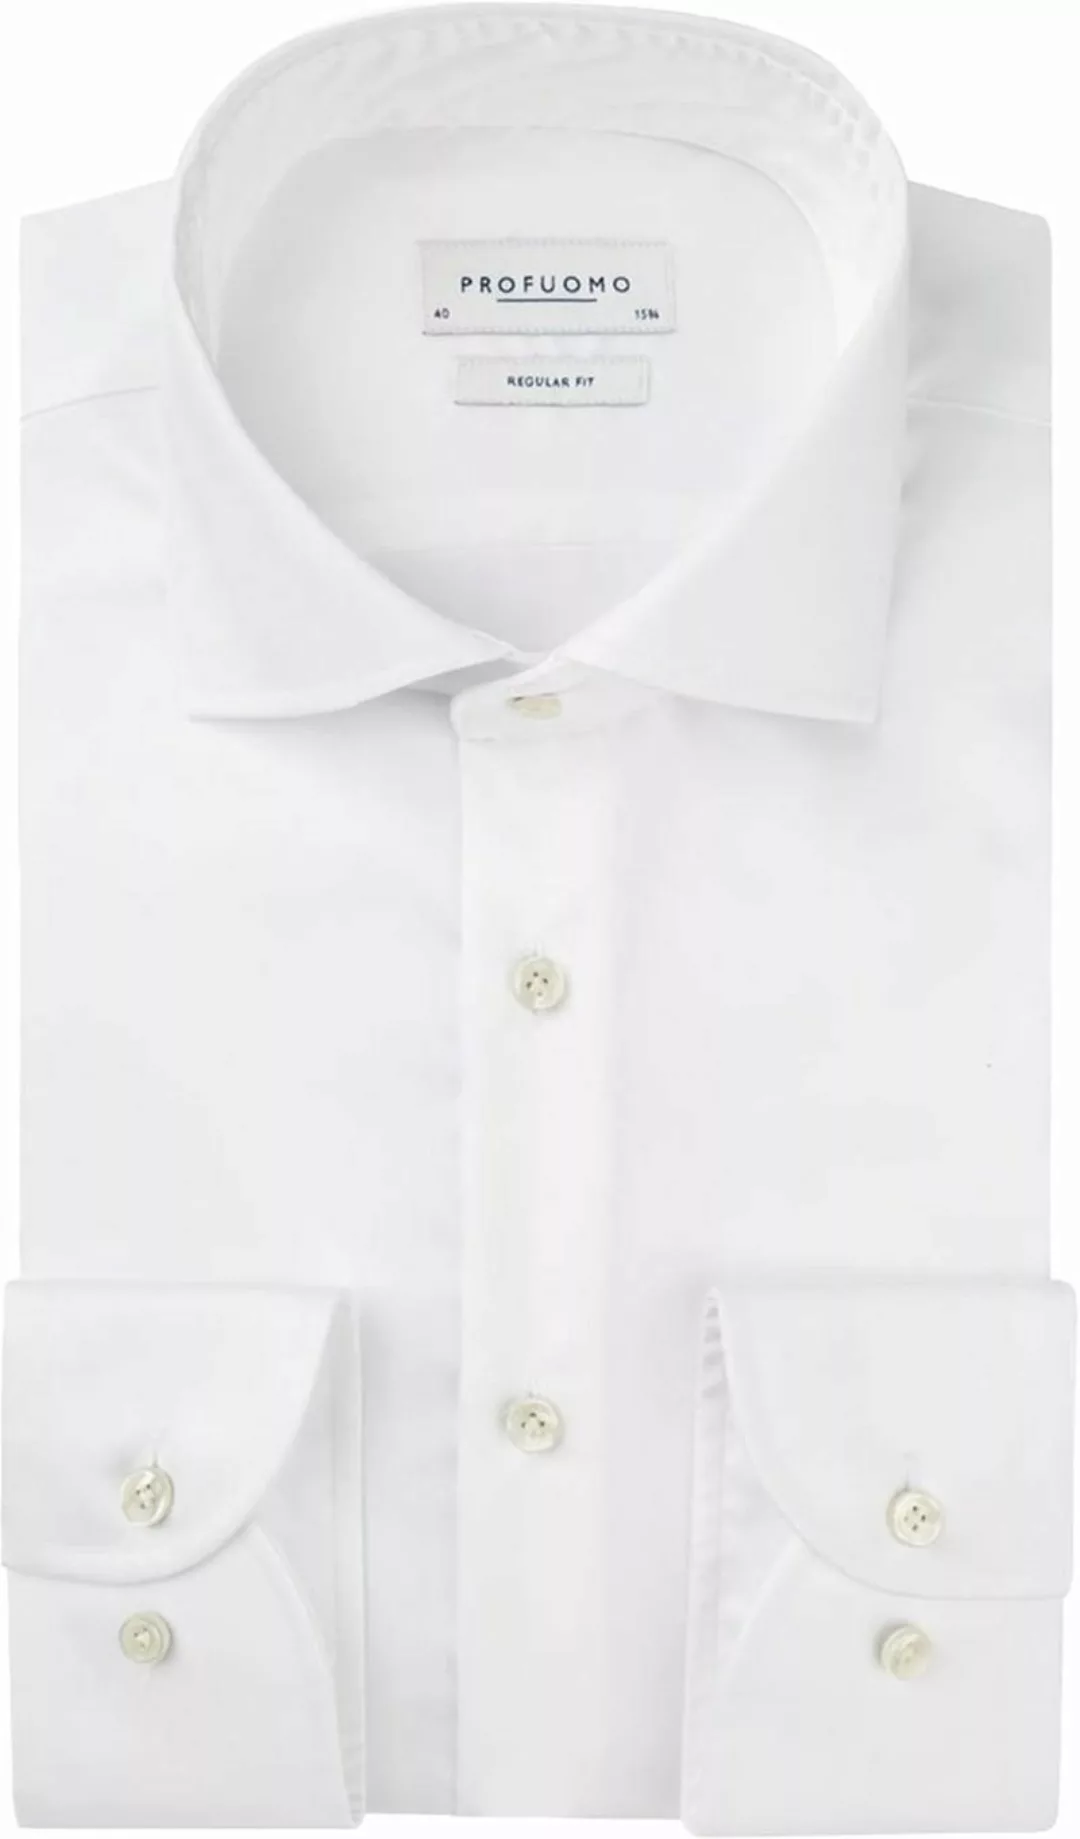 Profuomo Originale Hemd RF Weiß - Größe 42 günstig online kaufen